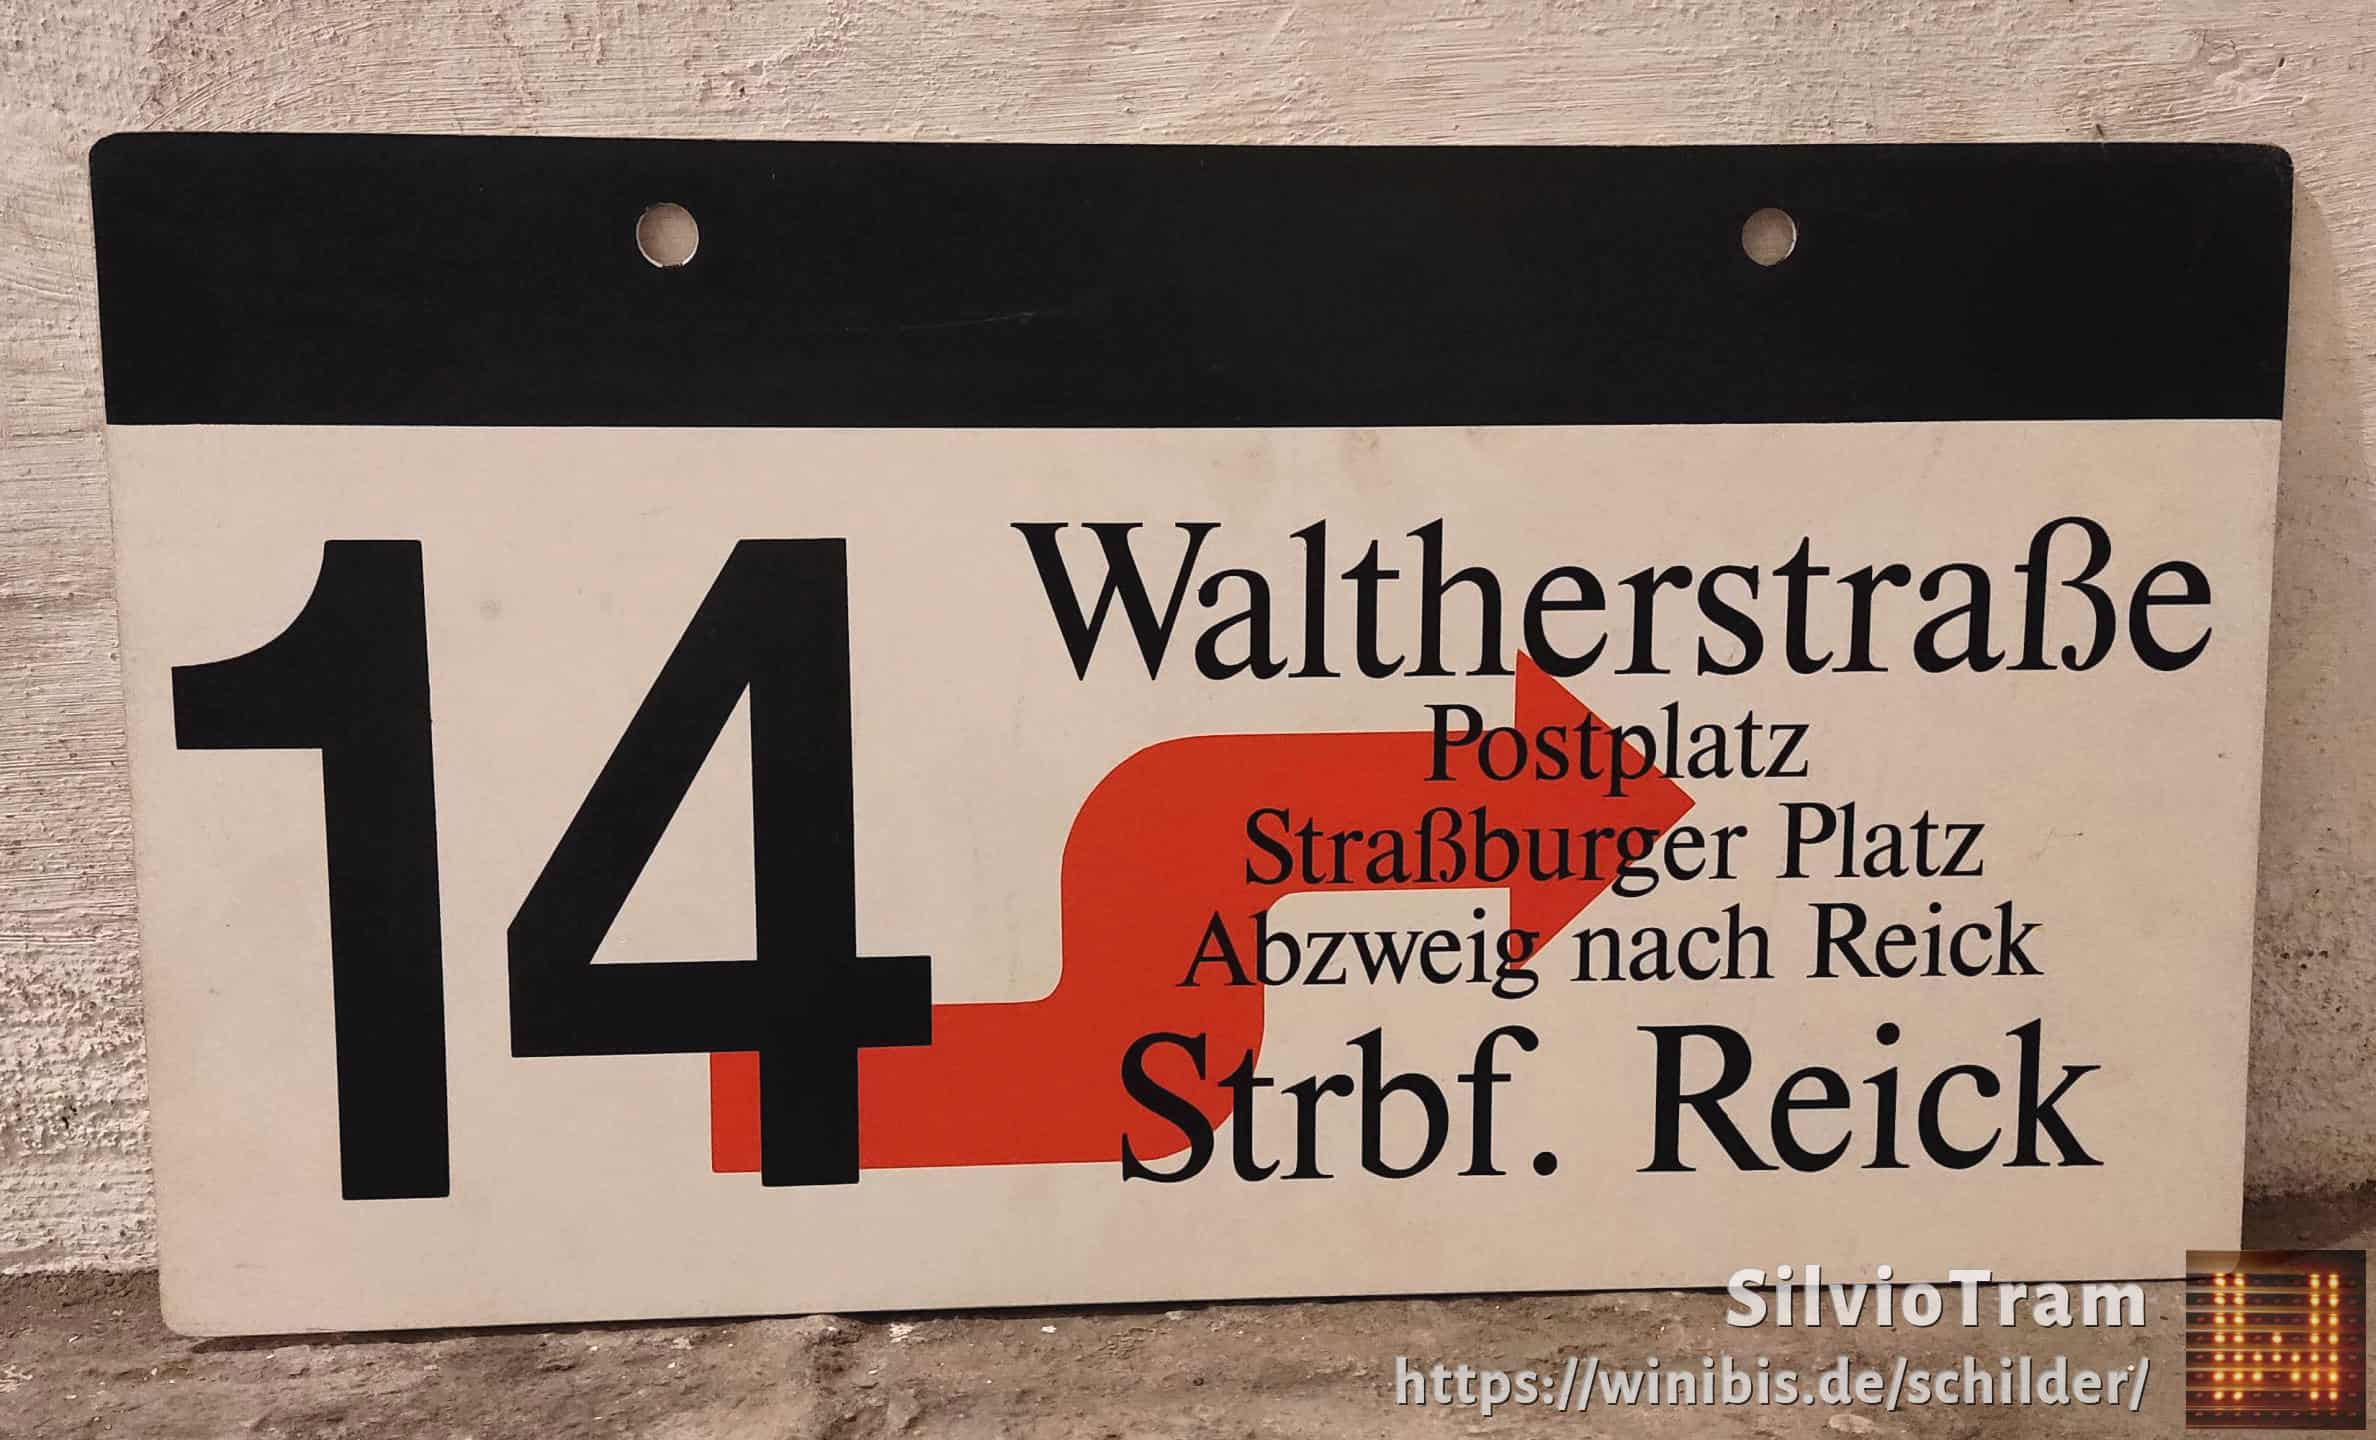 14 Waltherstraße – Strbf. Reick #3